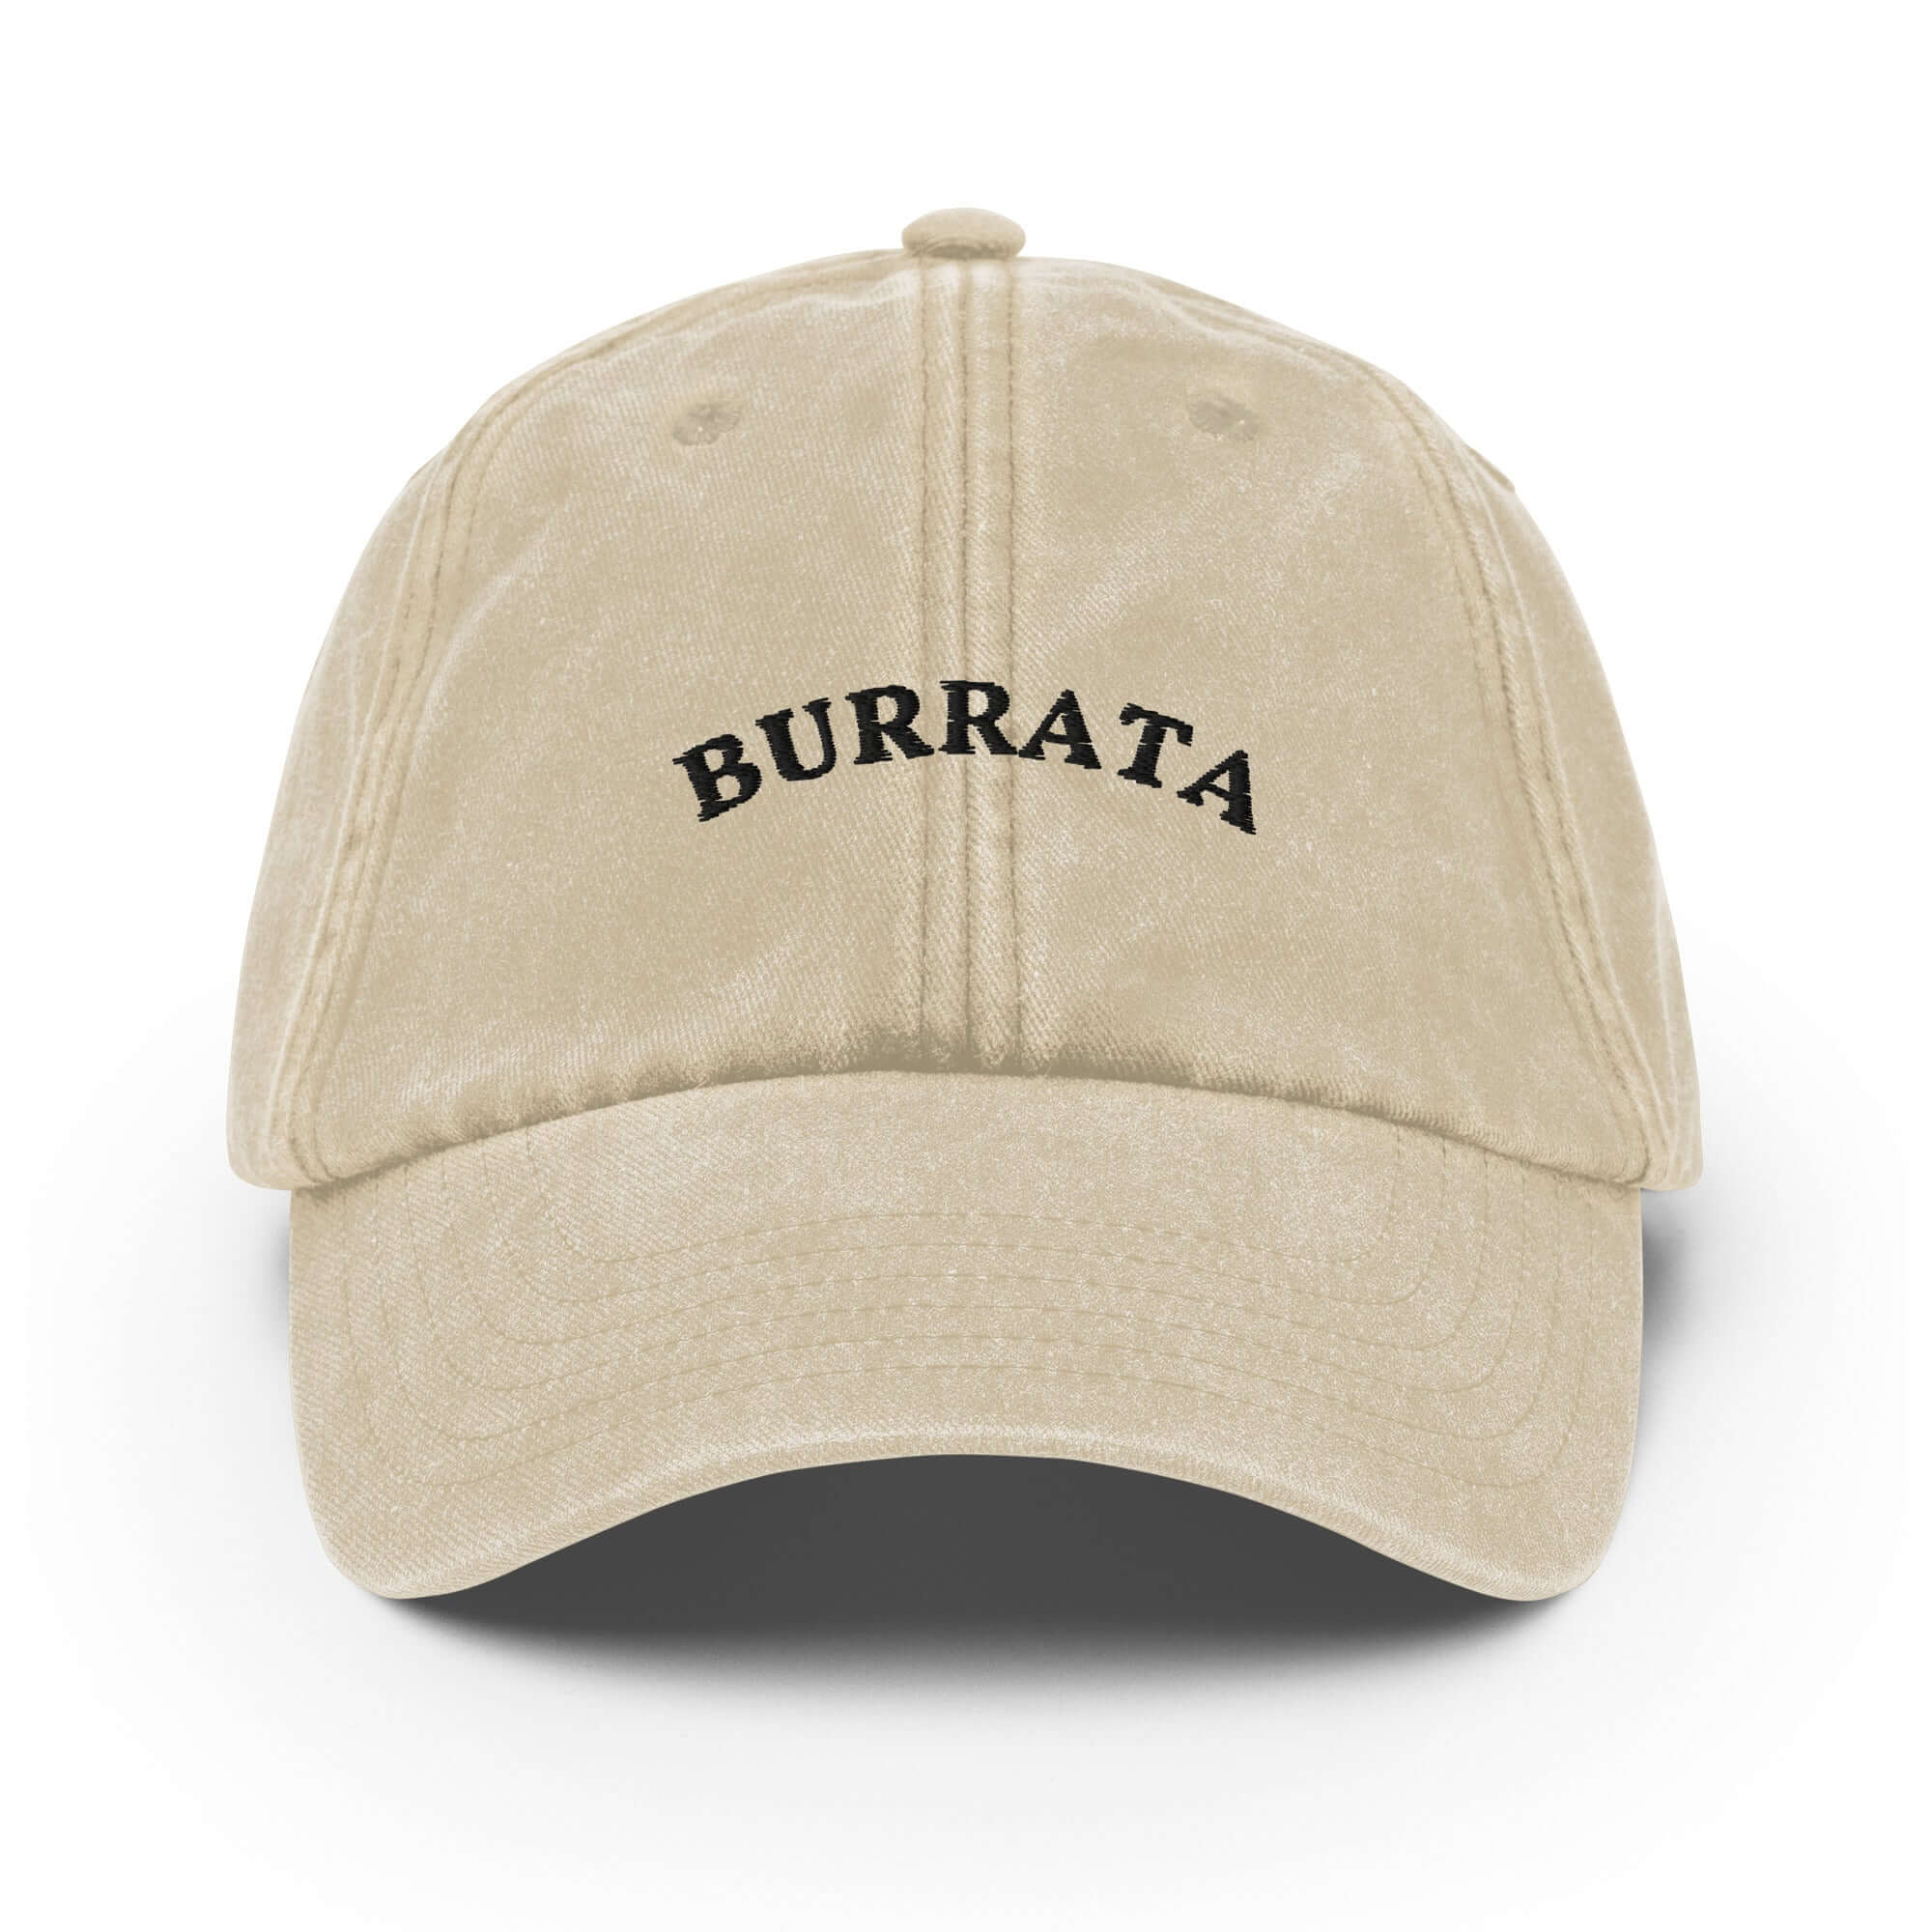 Burrata Vintage Cap - The Refined Spirit